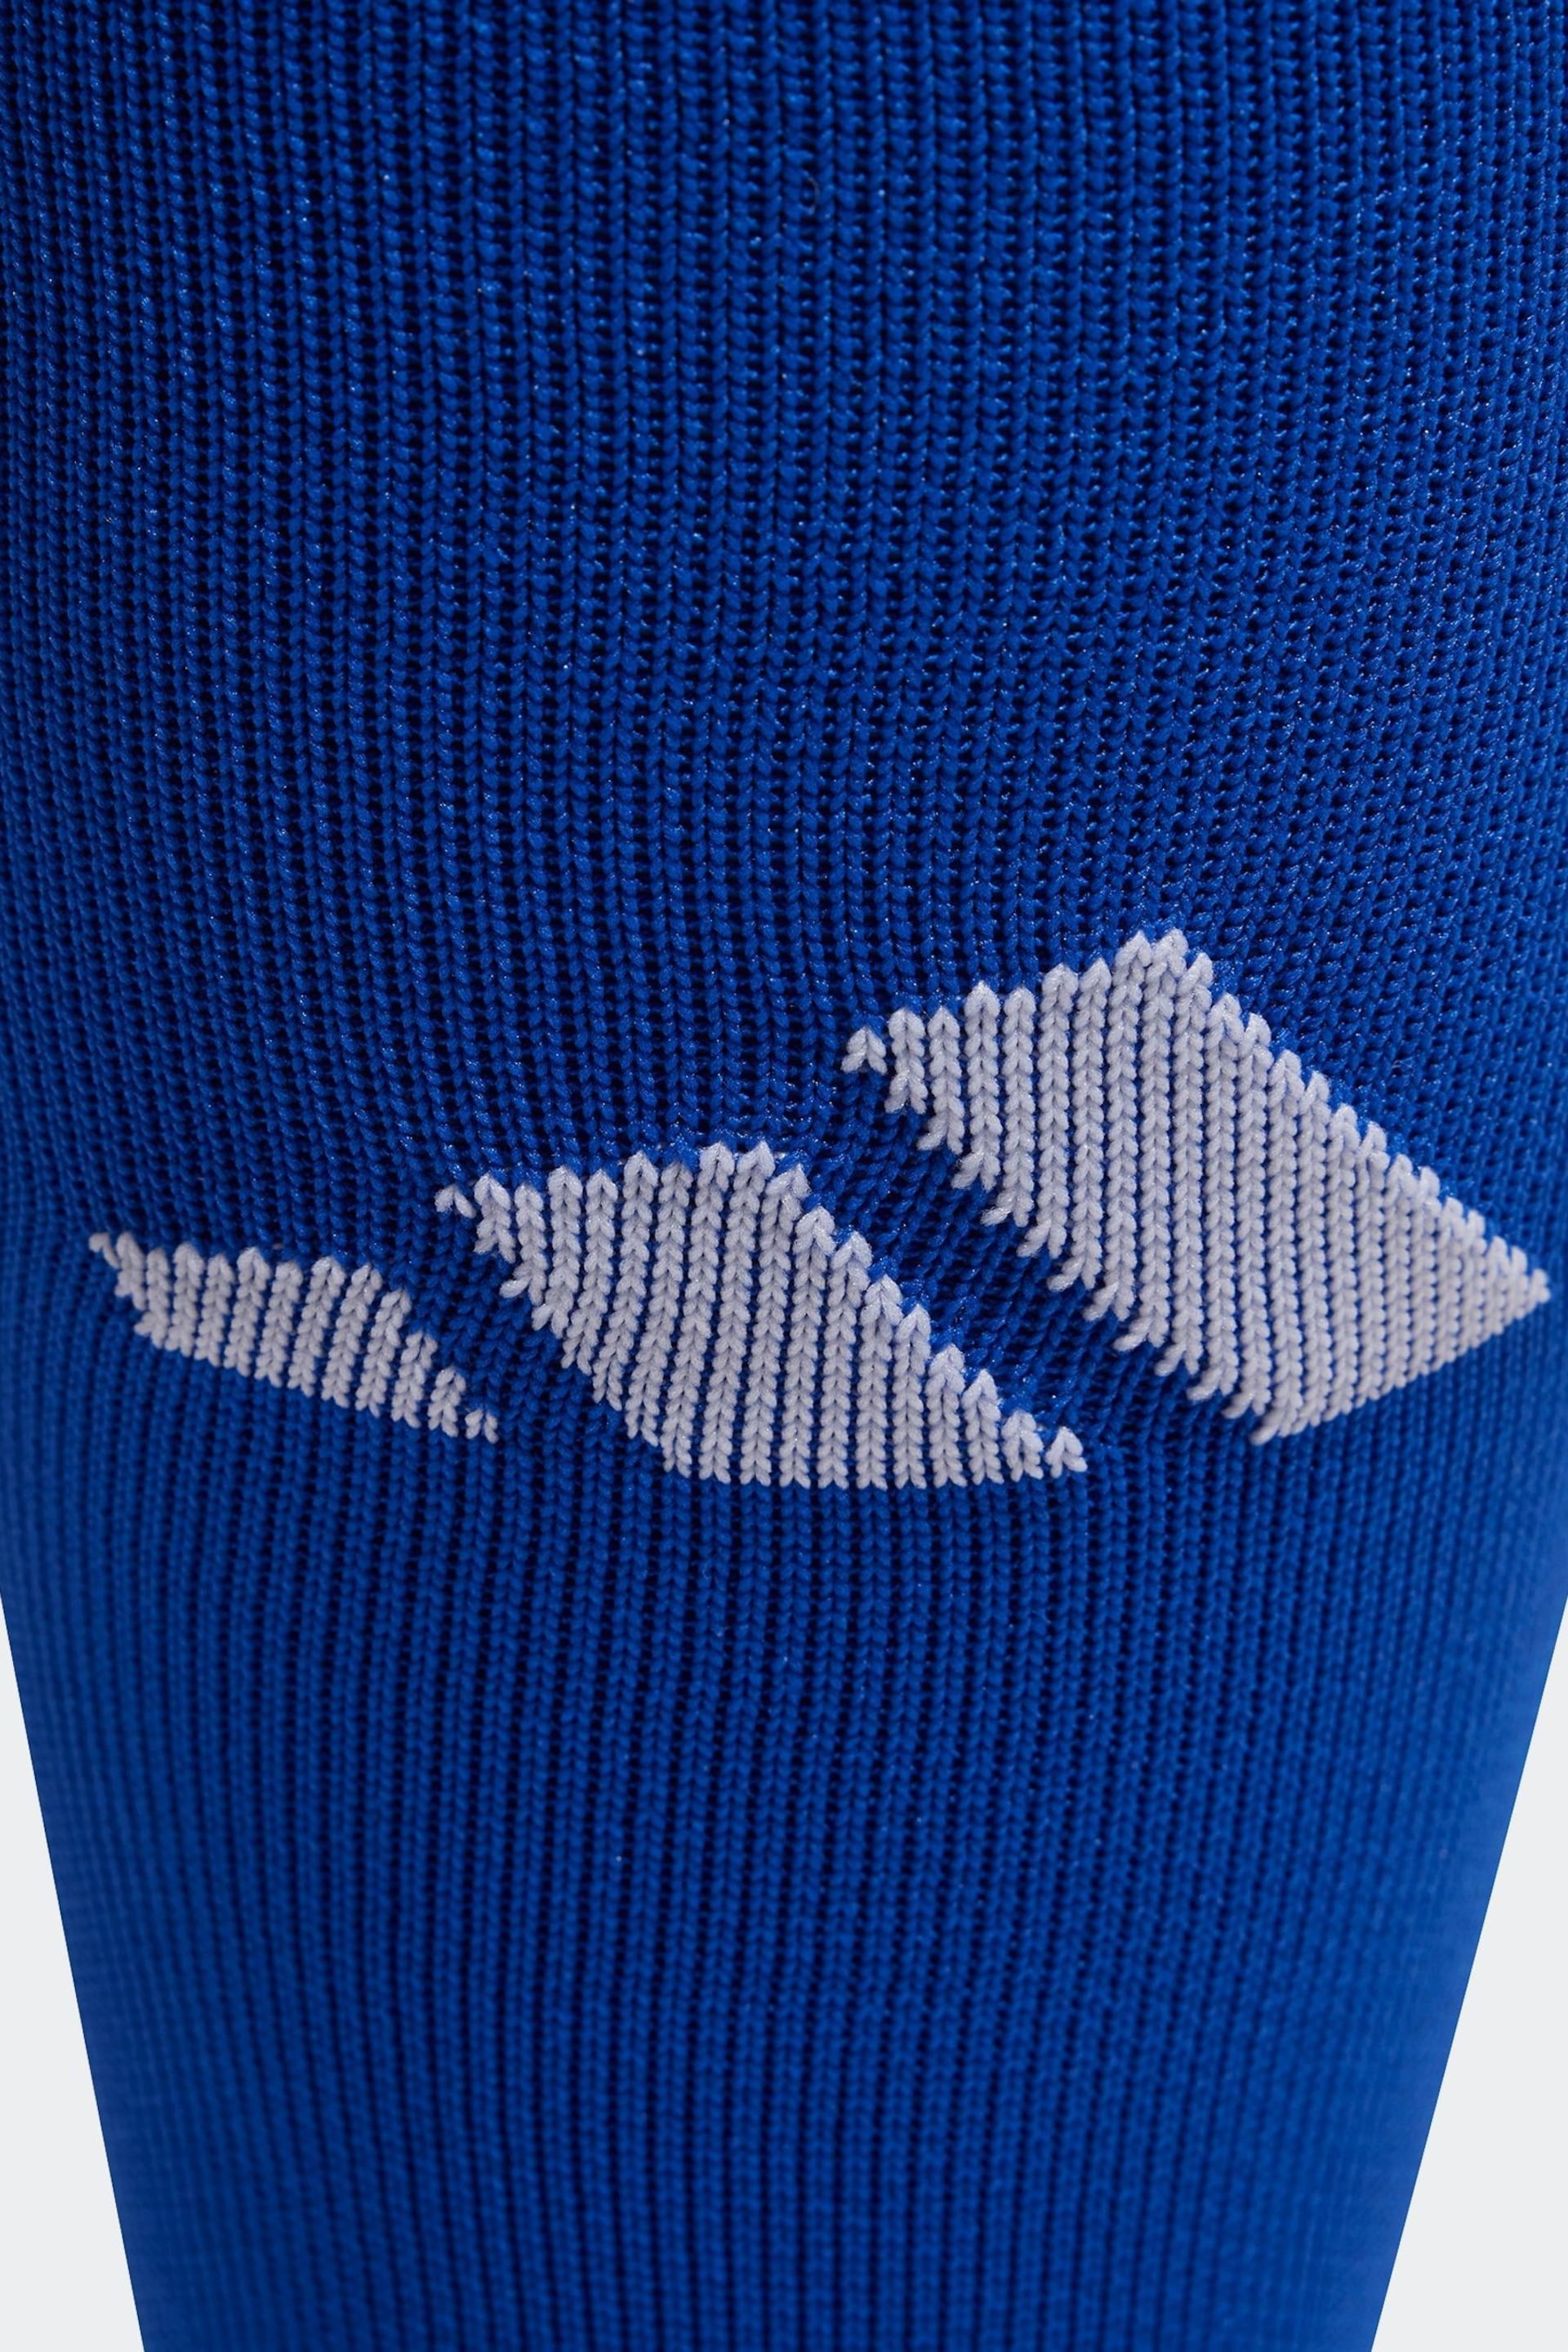 adidas Blue Performance Adi 23 Socks - Image 3 of 3